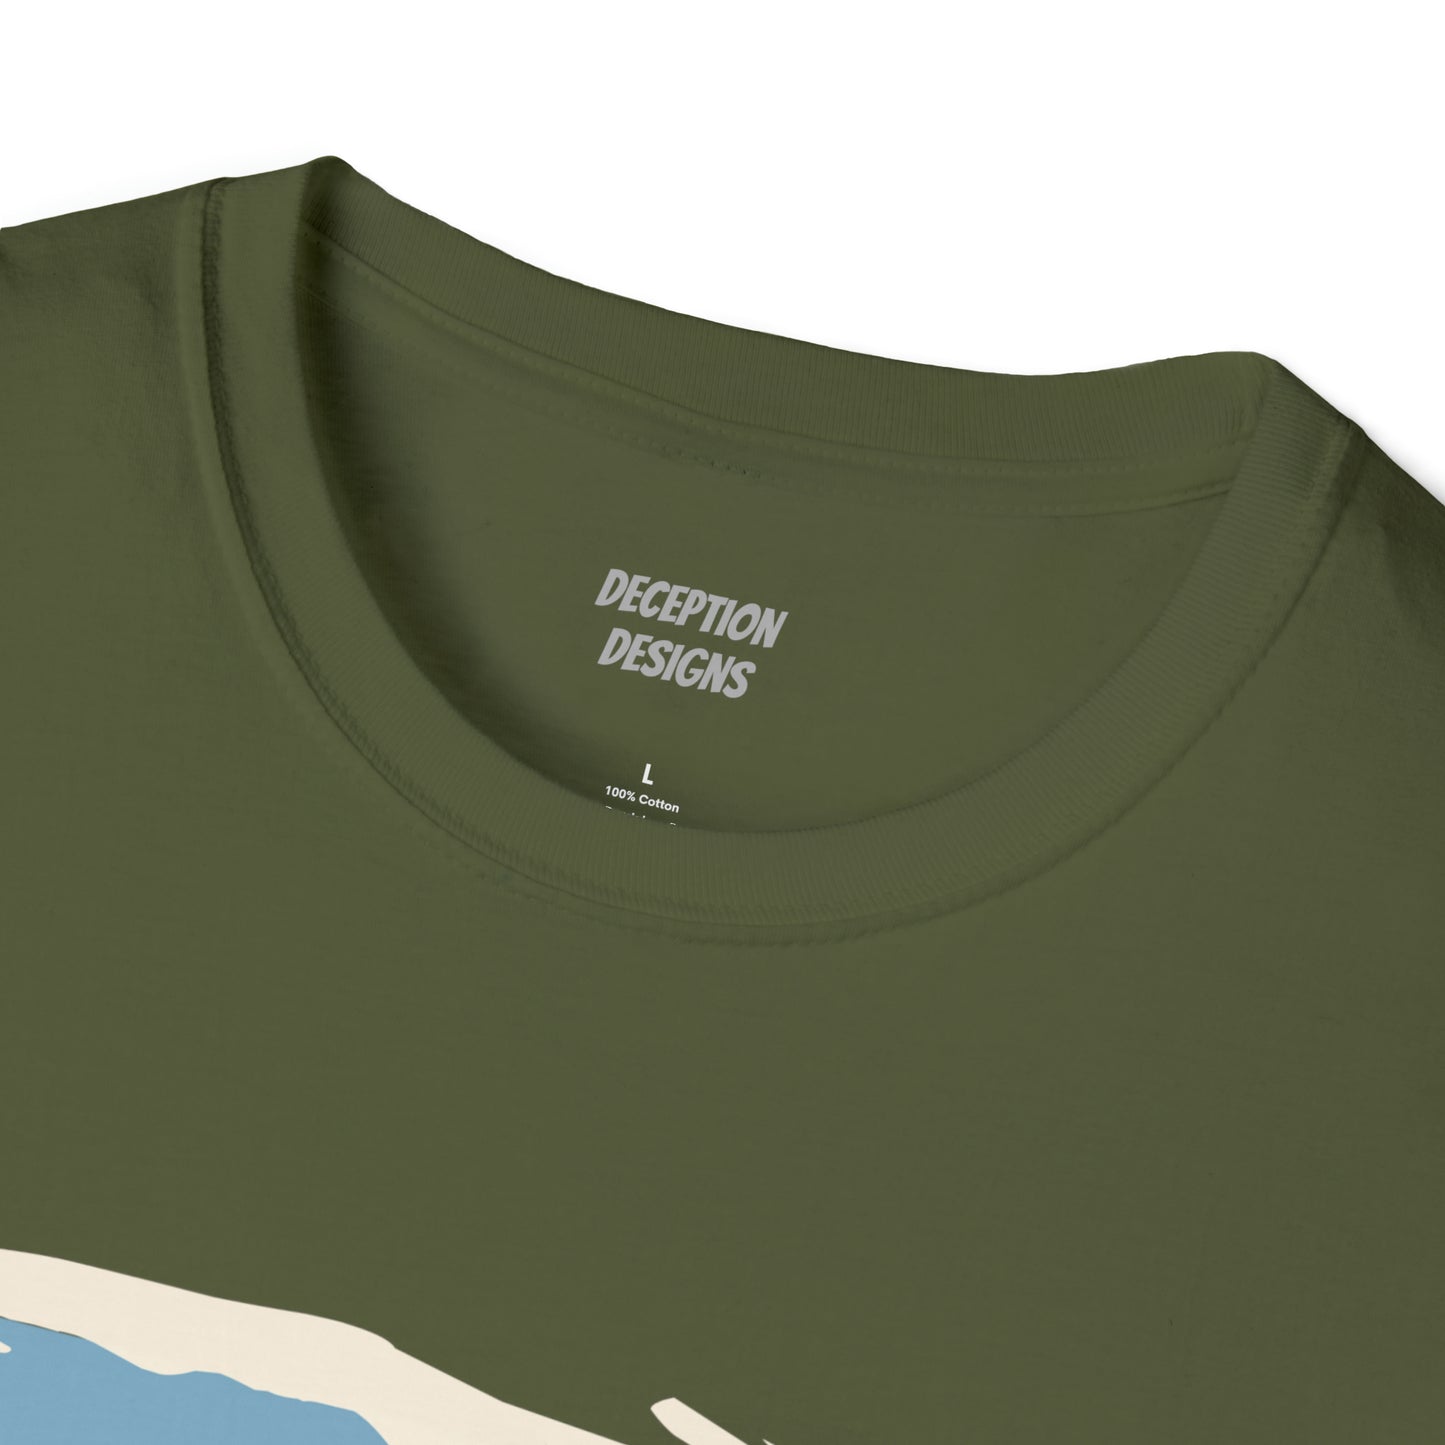 ANACORTES SALMON Unisex Softstyle T-Shirt